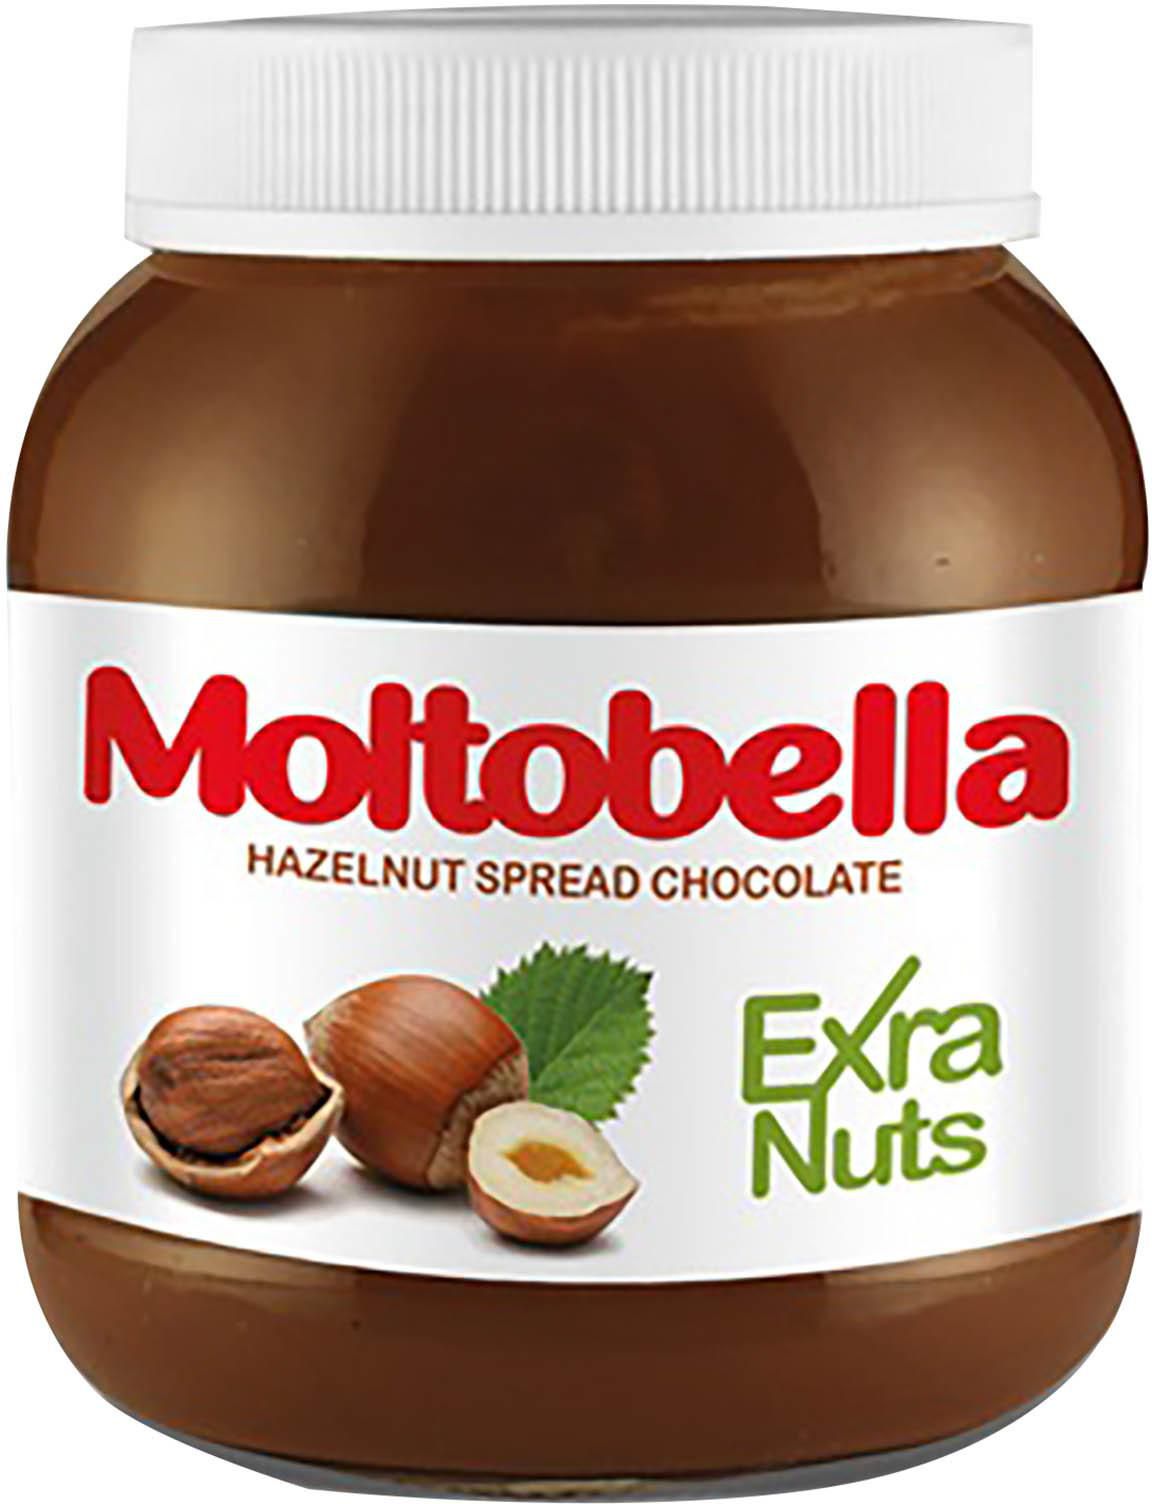 كريمة شوكولاتة المكسرات من مولتوبيلا - 330 جم